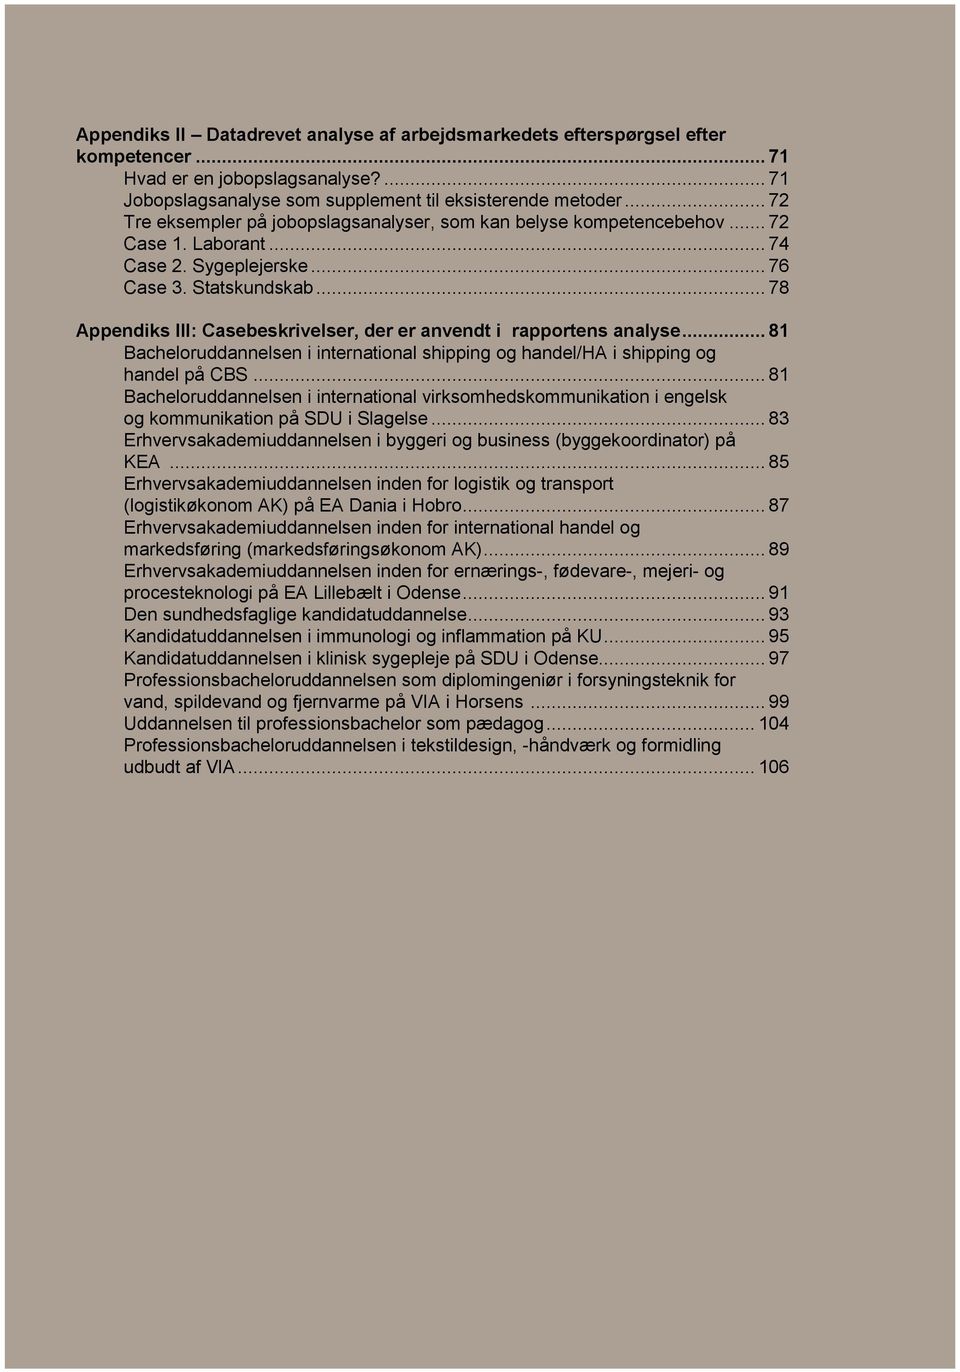 .. 78 Appendiks III: Casebeskrivelser, der er anvendt i rapportens analyse... 81 Bacheloruddannelsen i international shipping og handel/ha i shipping og handel på CBS.